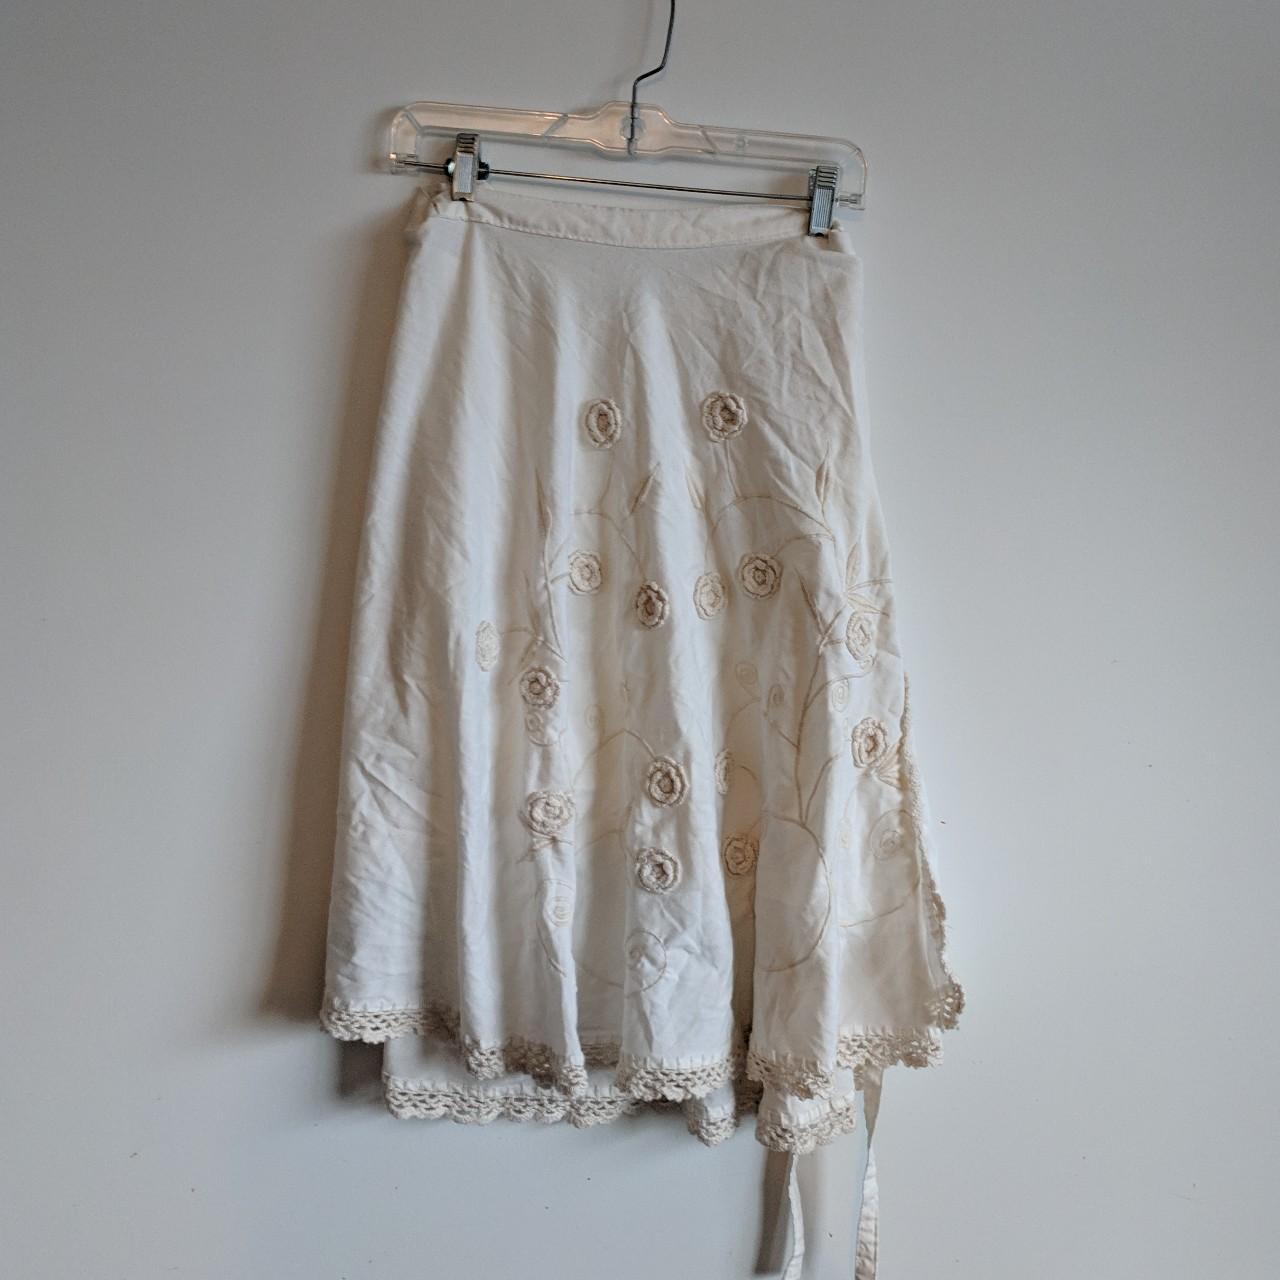 ;Stunning white vintage 1960s / 1970s wrap skirt... - Depop